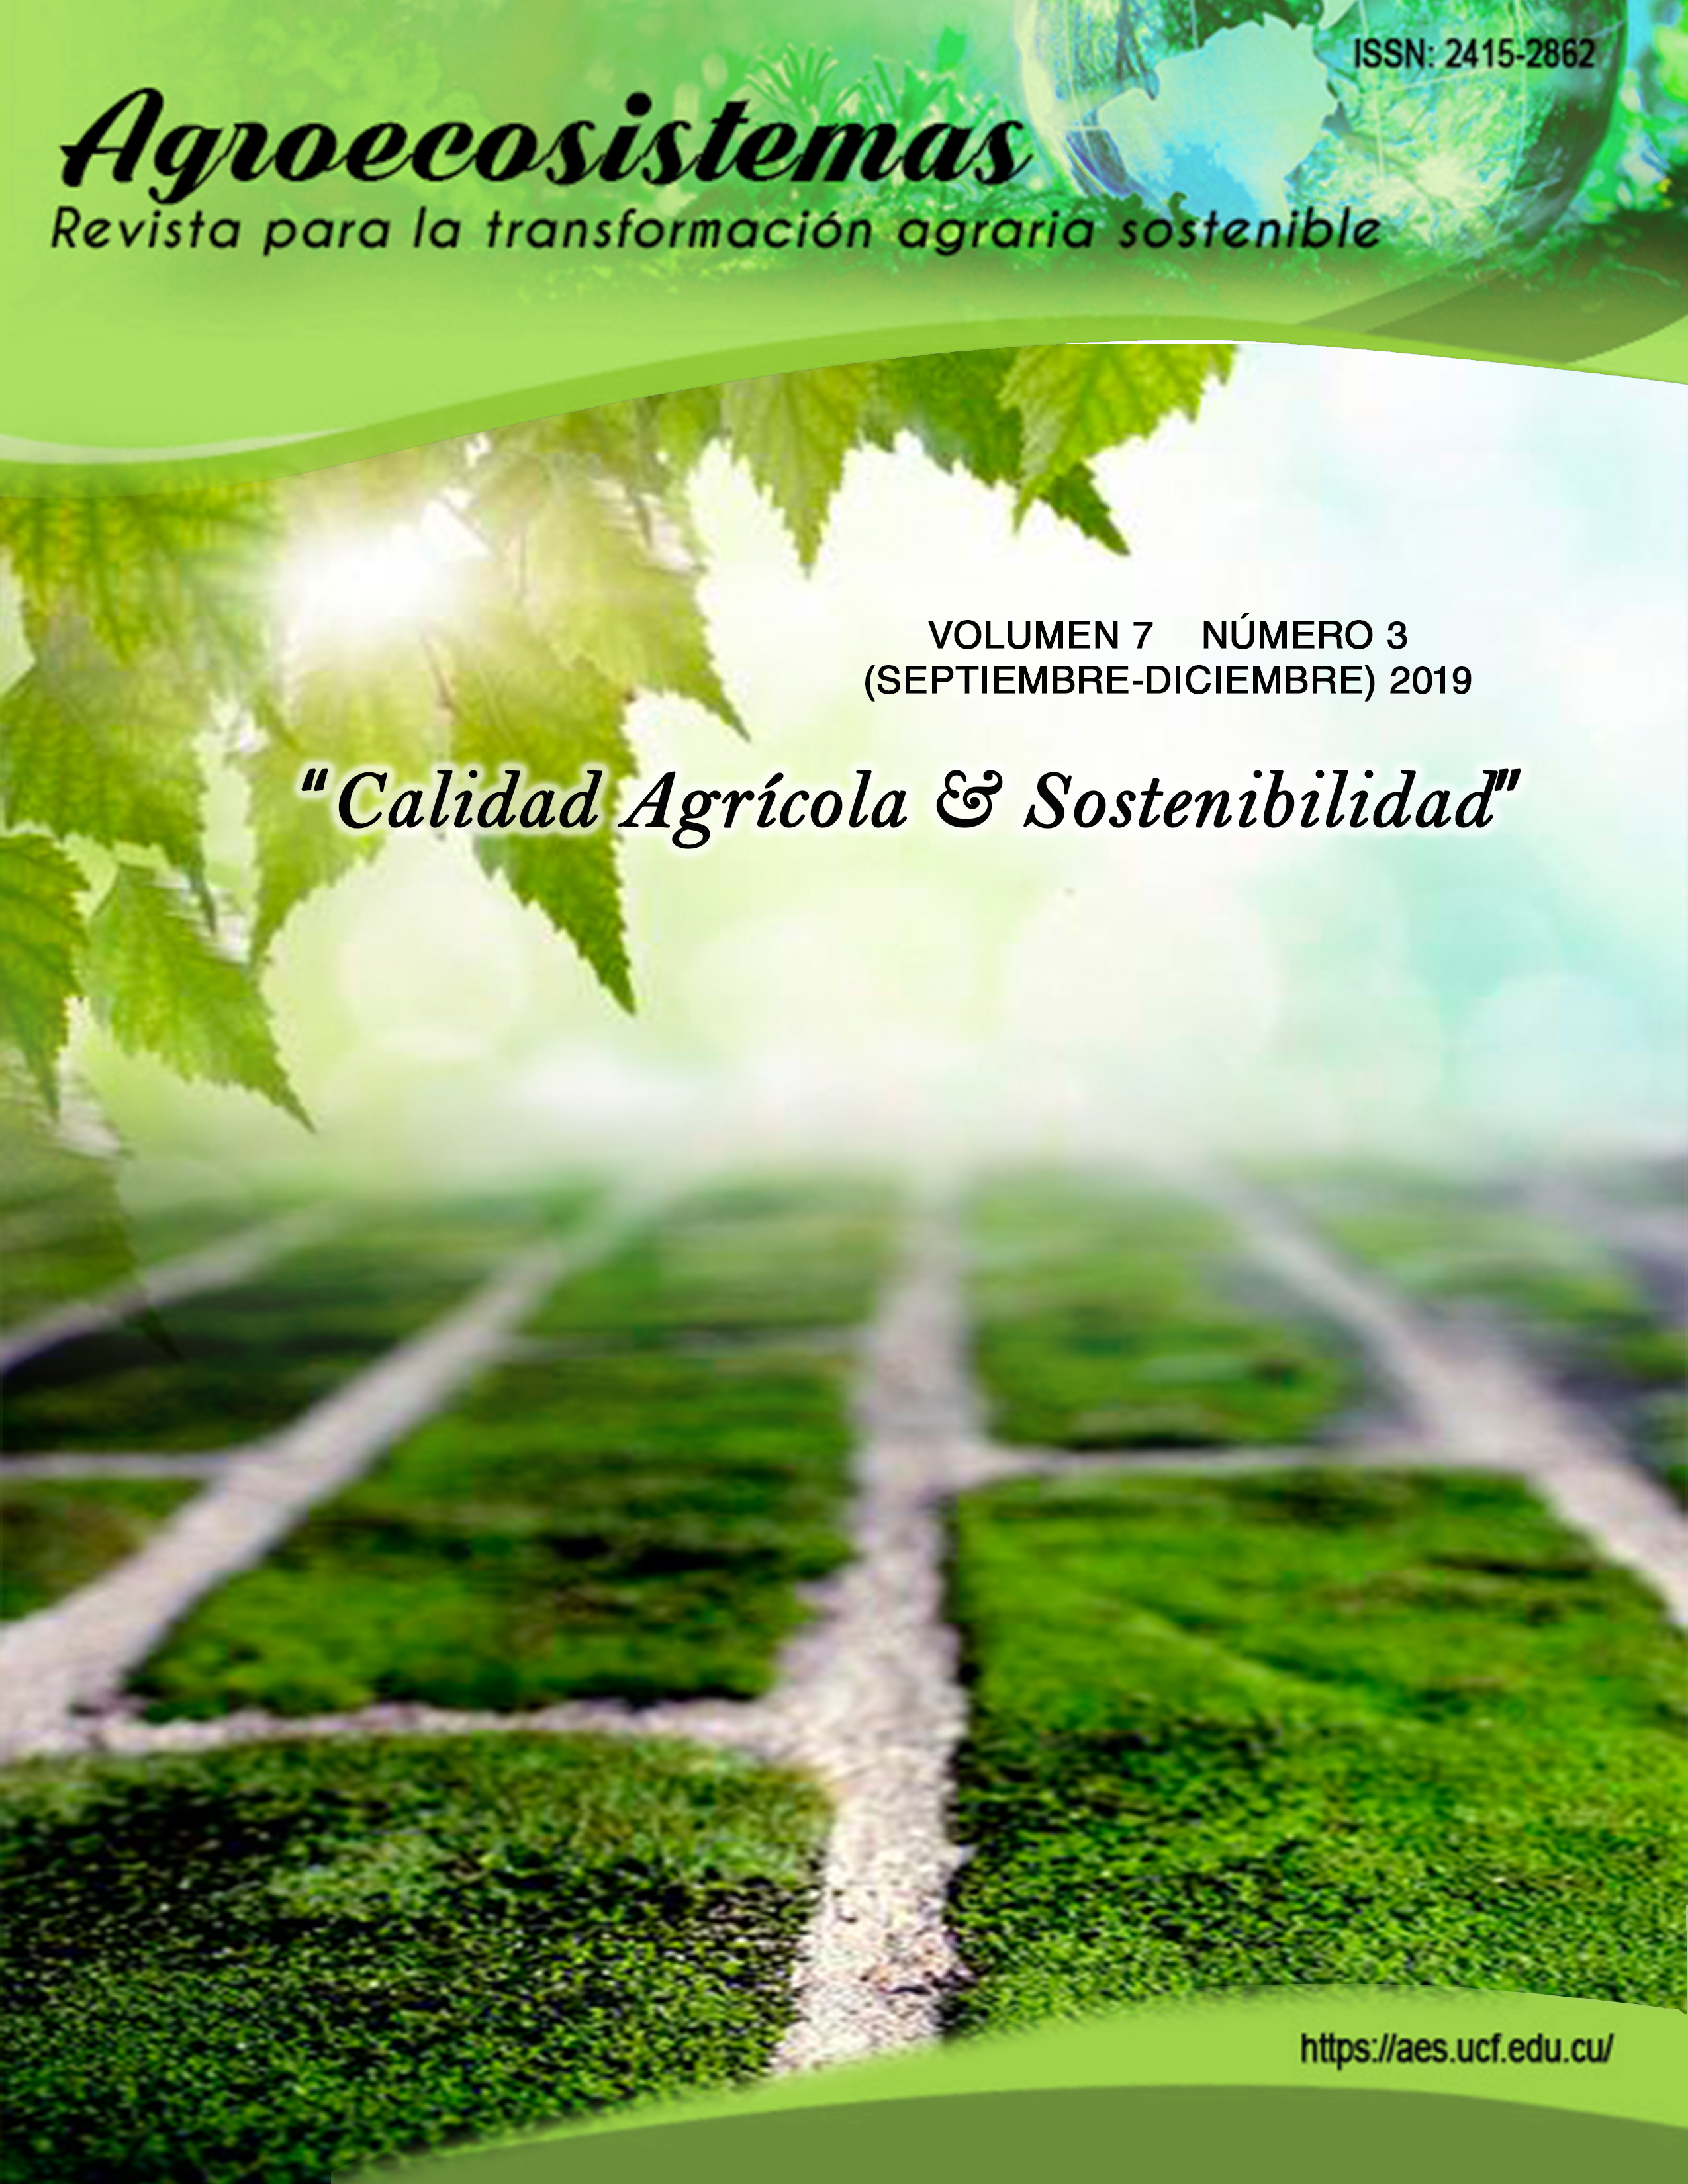 					View Vol. 7 No. 3 (2019): Calidad Agrícola & Sostenibilidad
				